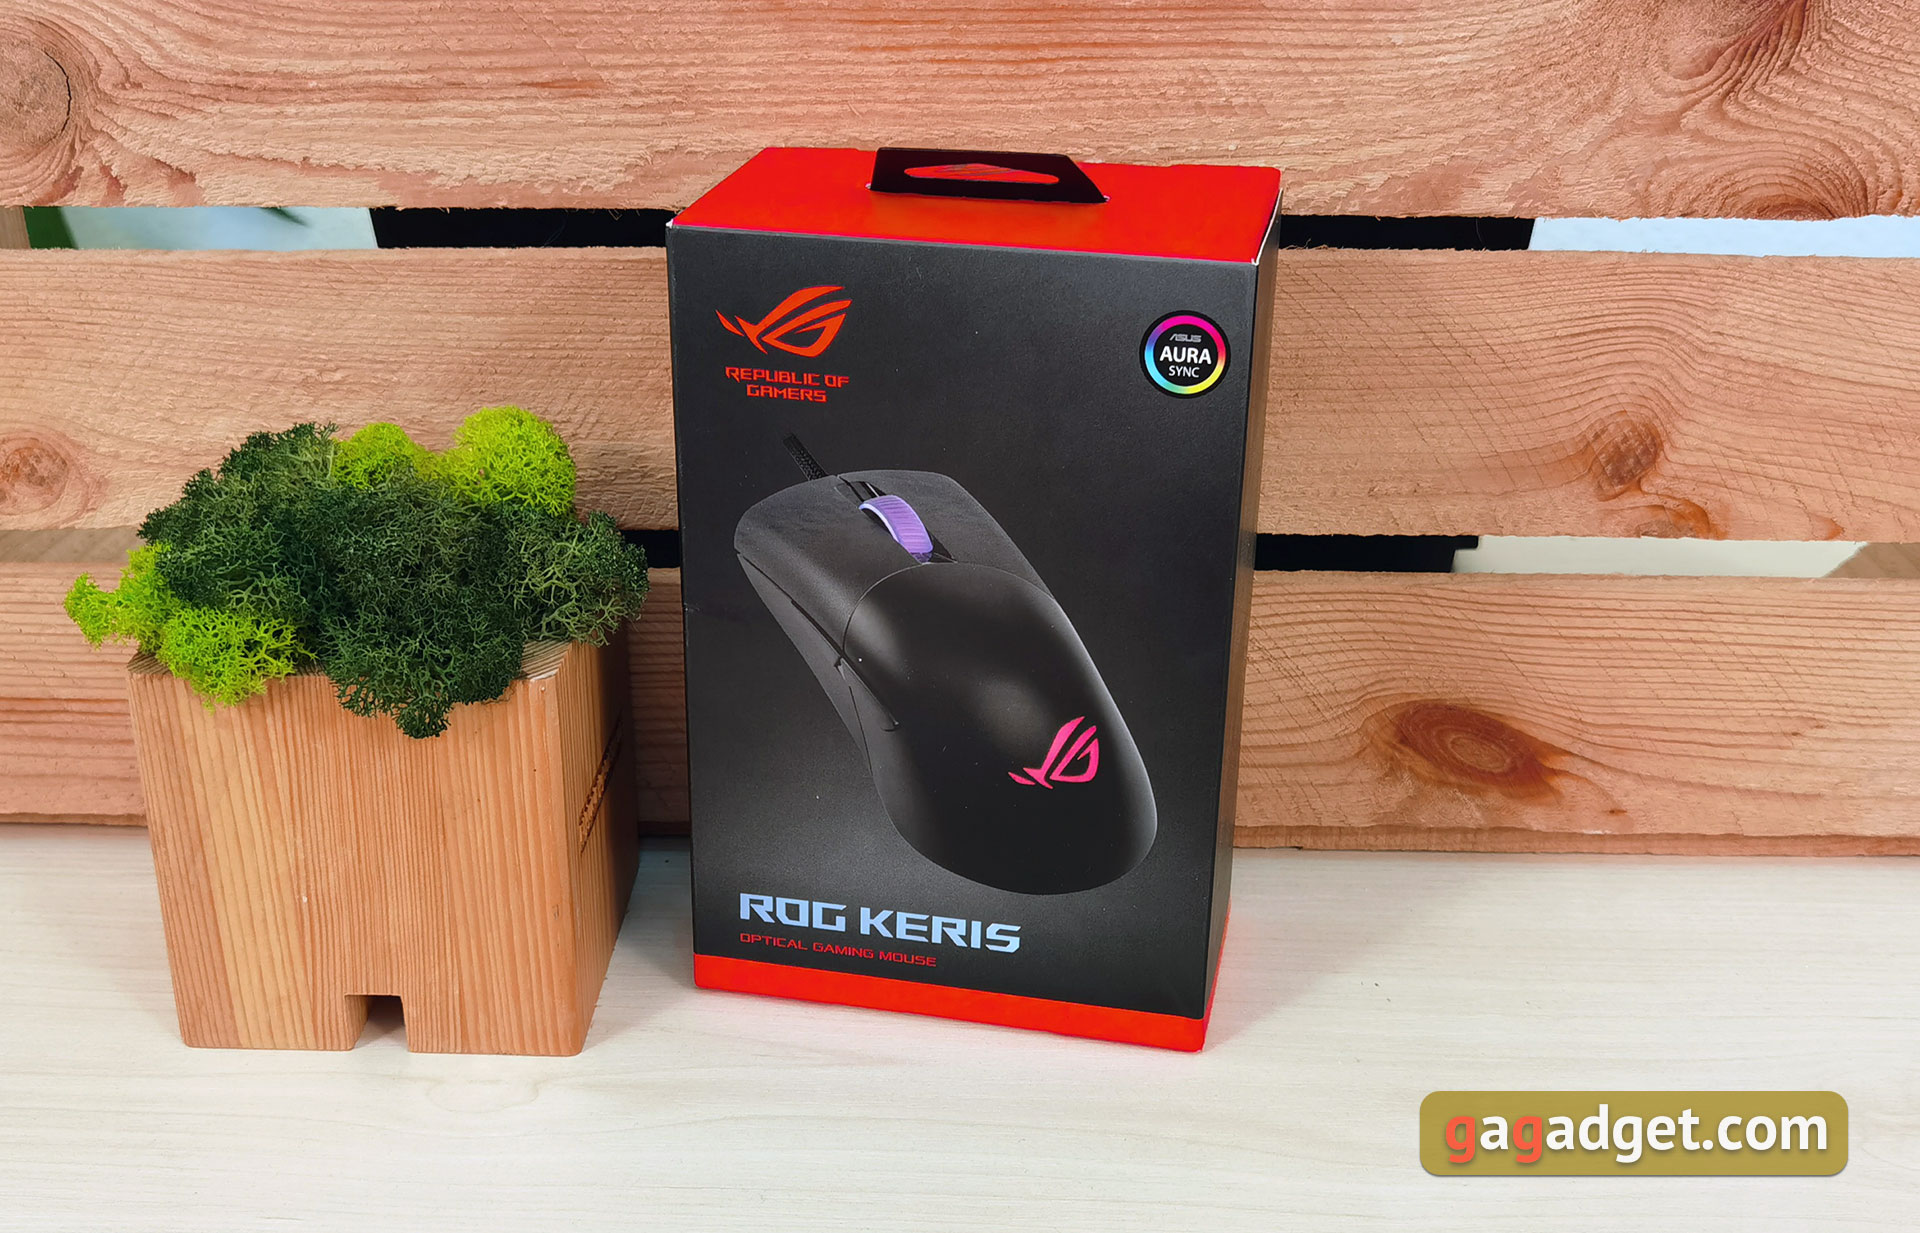 ASUS ROG Keris Überblick: Ultra-leichte Gaming-Maus mit reaktionsschnellem Sensor-2